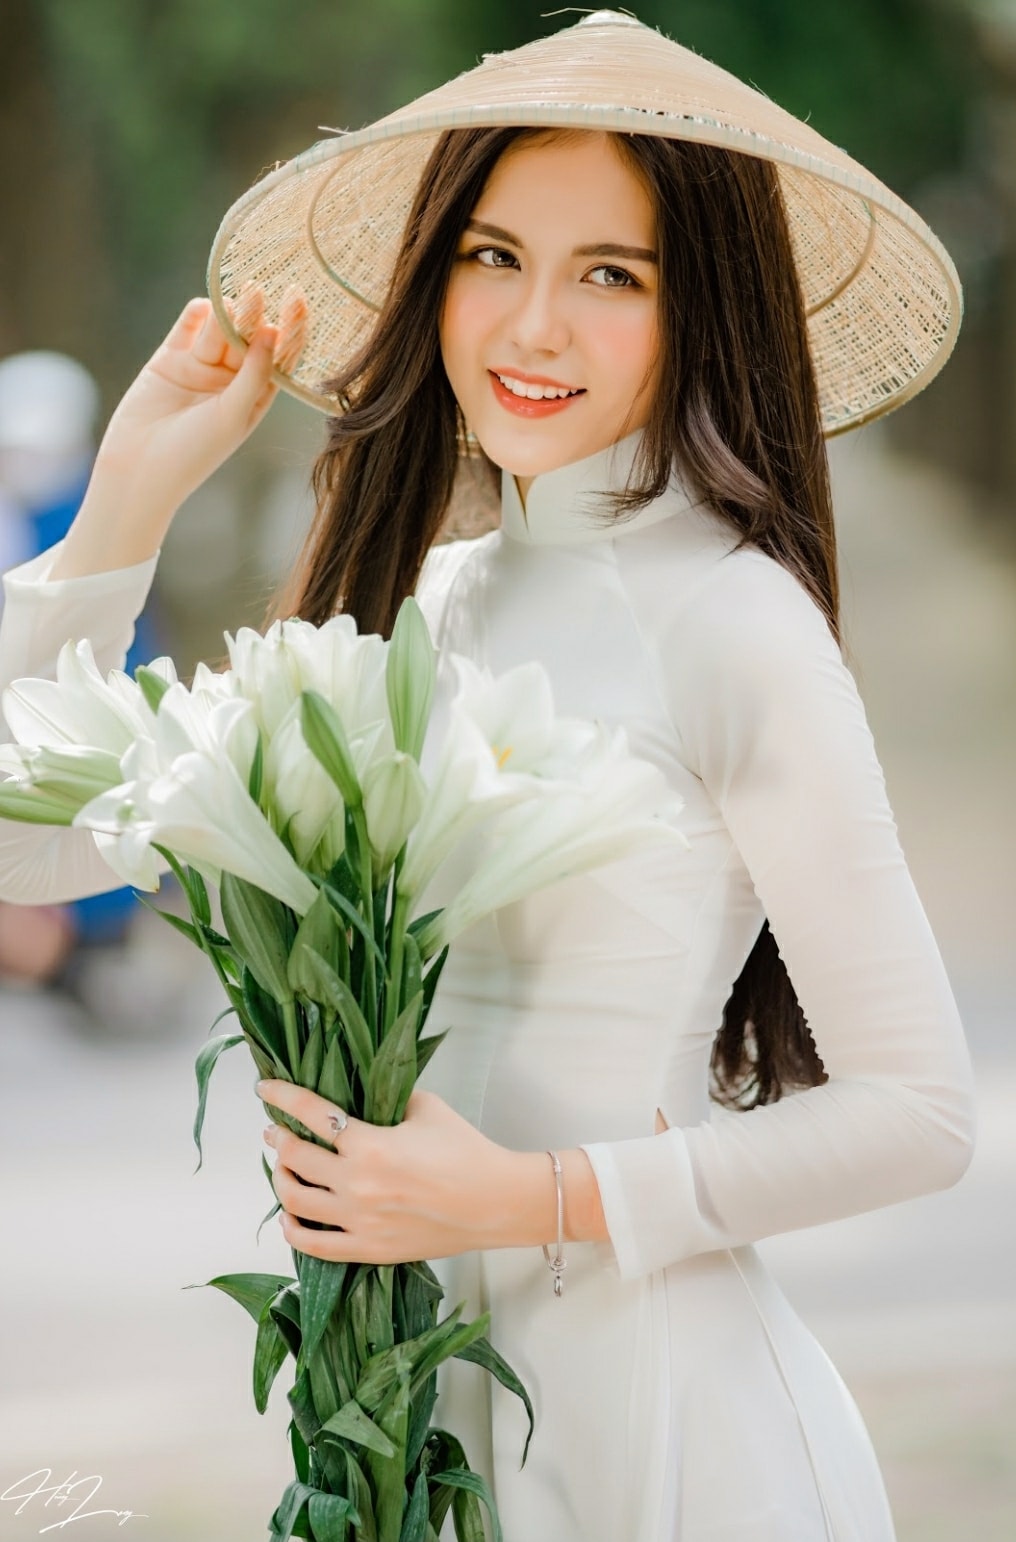 Profile Tân Hoa hậu Du lịch Việt Nam: Người dẫn chương trình quen thuộc của VTV, thành tích học tập đáng ngưỡng mộ - Ảnh 3.